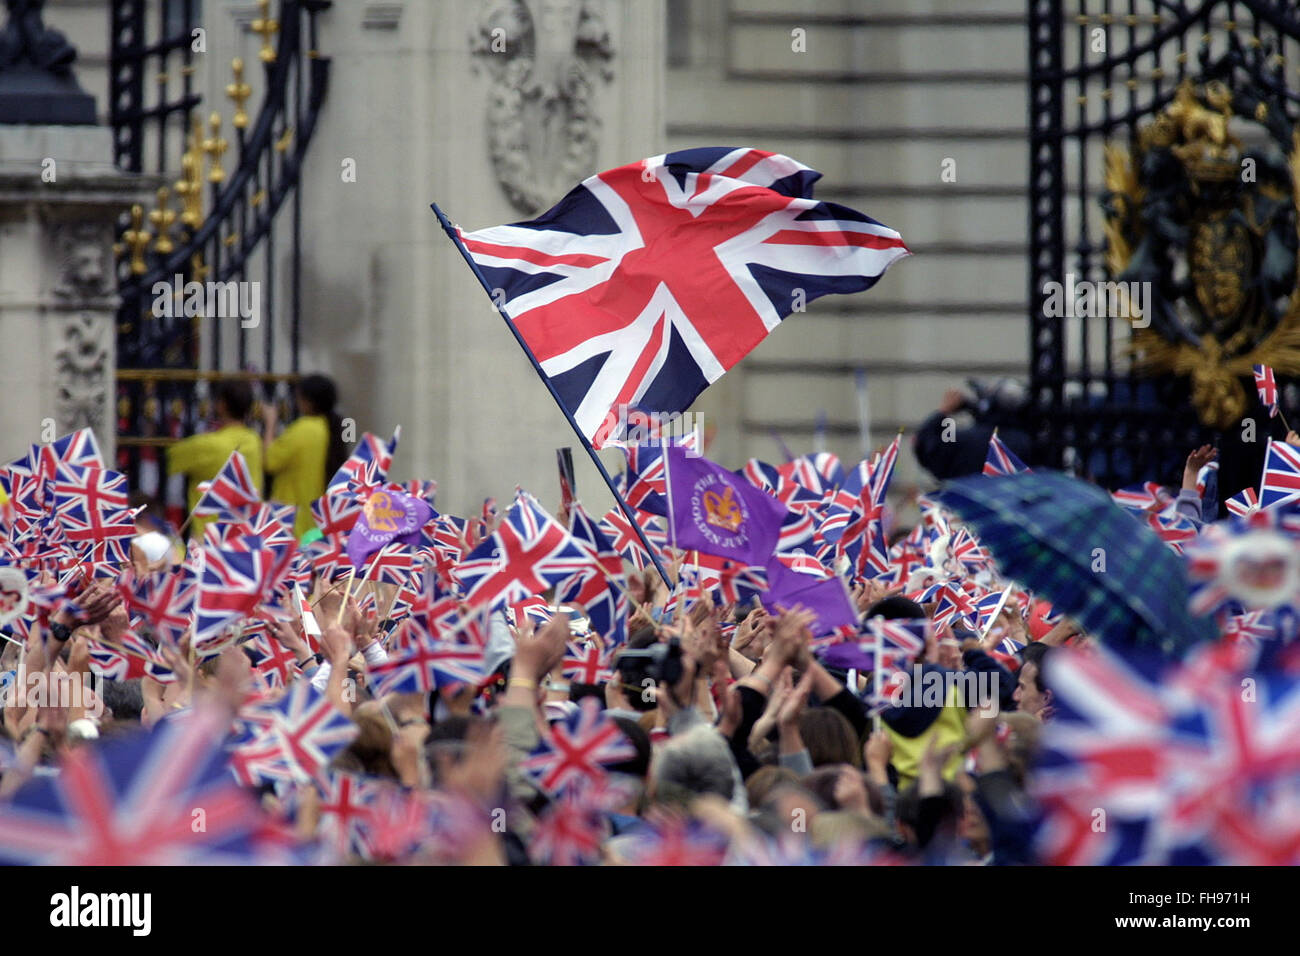 La folla entusiasta sventolando bandiere Unione fuori Buckingham Palace la Regina Elisabetta II appare sul balcone di Buckingham Palace al termine delle celebrazioni per il suo Giubileo d oro. Le celebrazioni hanno avuto luogo in tutto il Regno Unito con il fulcro di una parata e fuochi d'artificio a Buckingham Palace, Regina della residenza di Londra. La regina Elisabetta salì al trono britannico nel 1952 in seguito alla morte di suo padre, il re George VI. Foto Stock